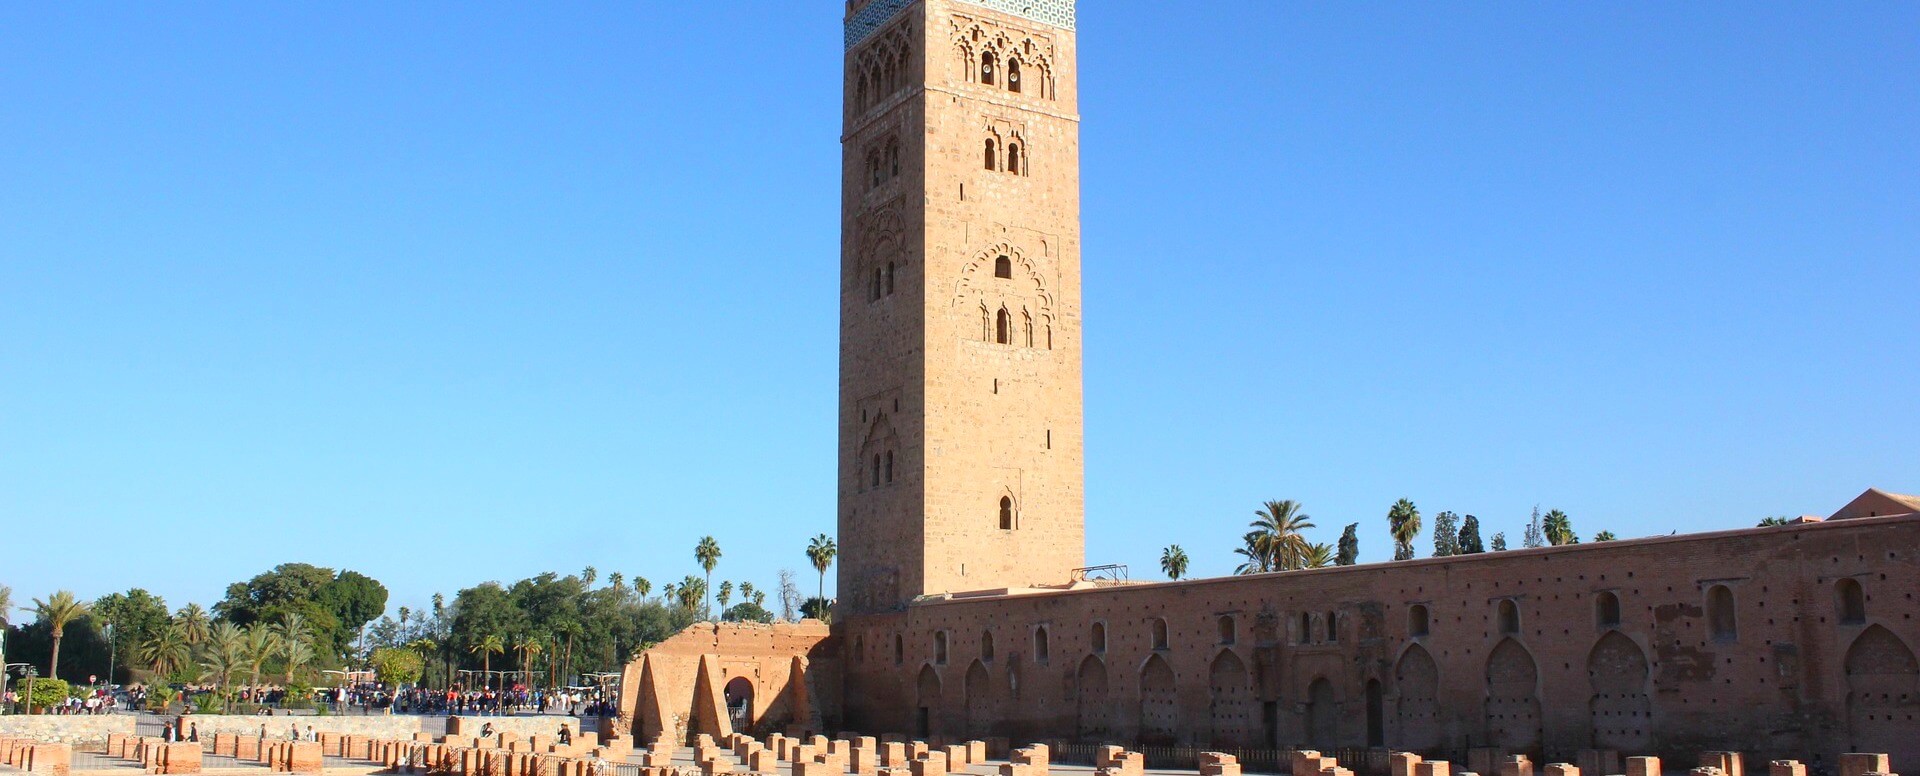 History of Marrakech - Marrakech